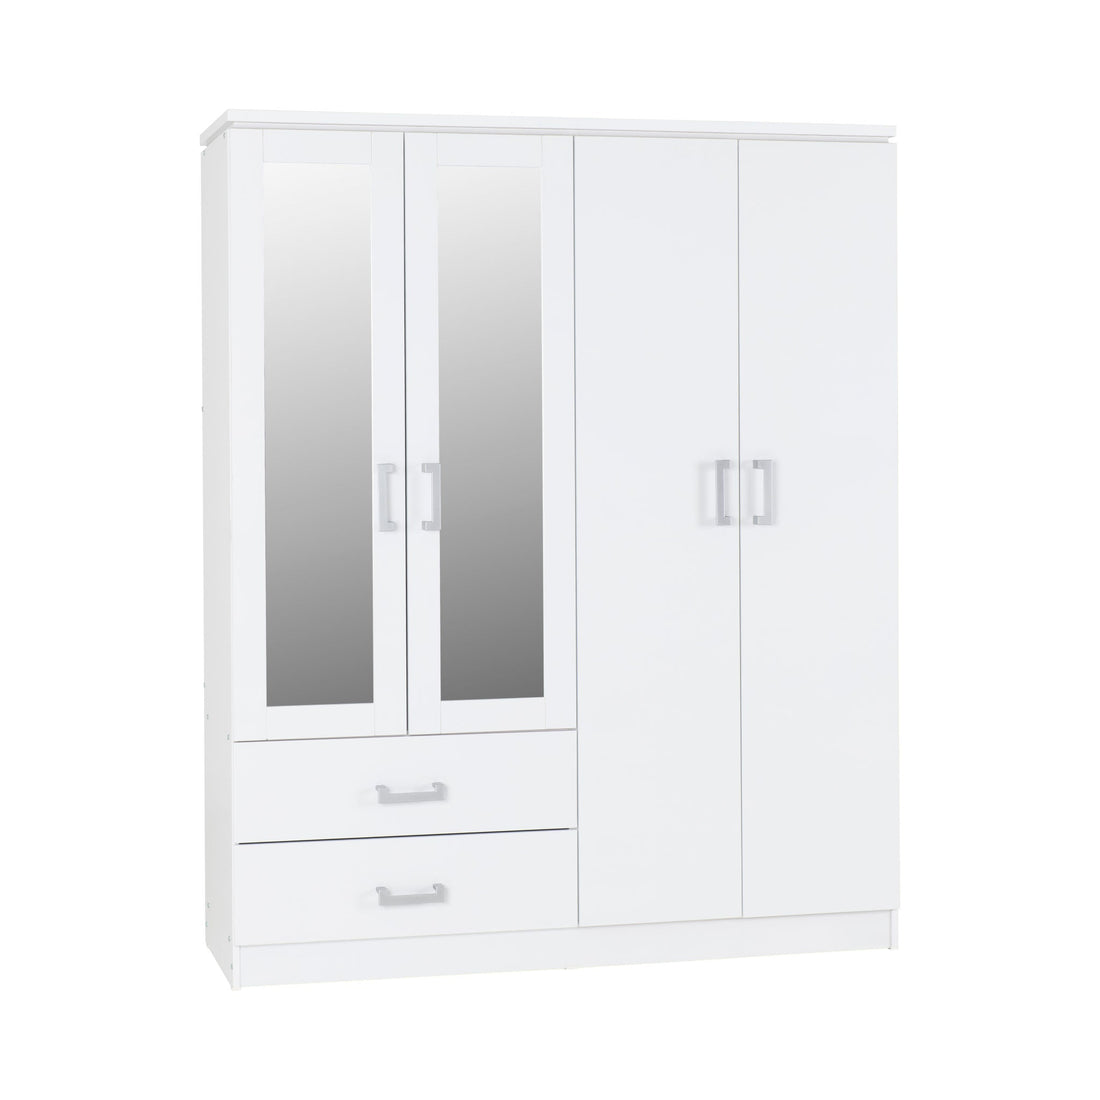 Charles 4 Door 2 Drawer Mirrored Wardrobe (White)